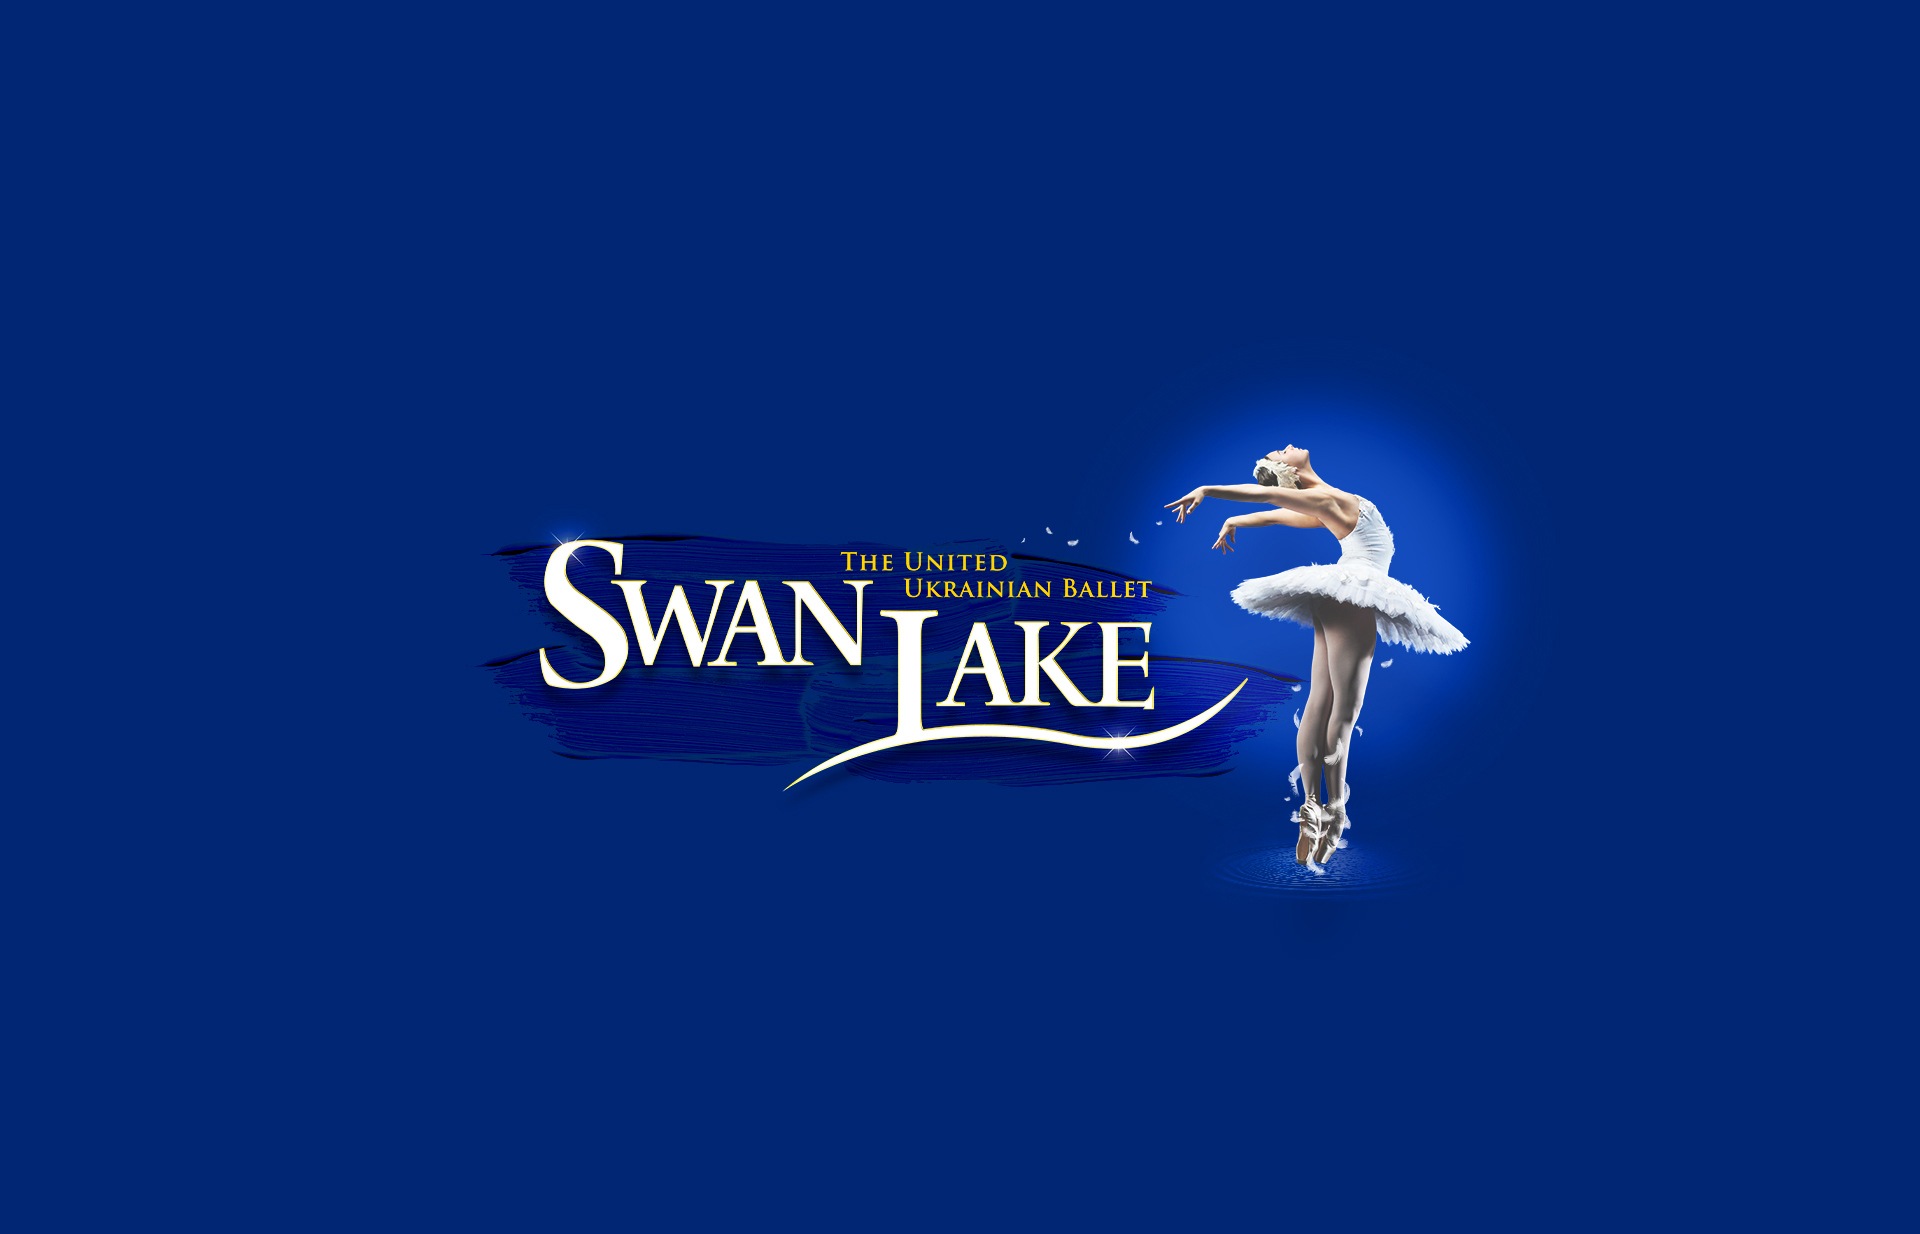 Swan Lake – The United Ukrainian Ballet